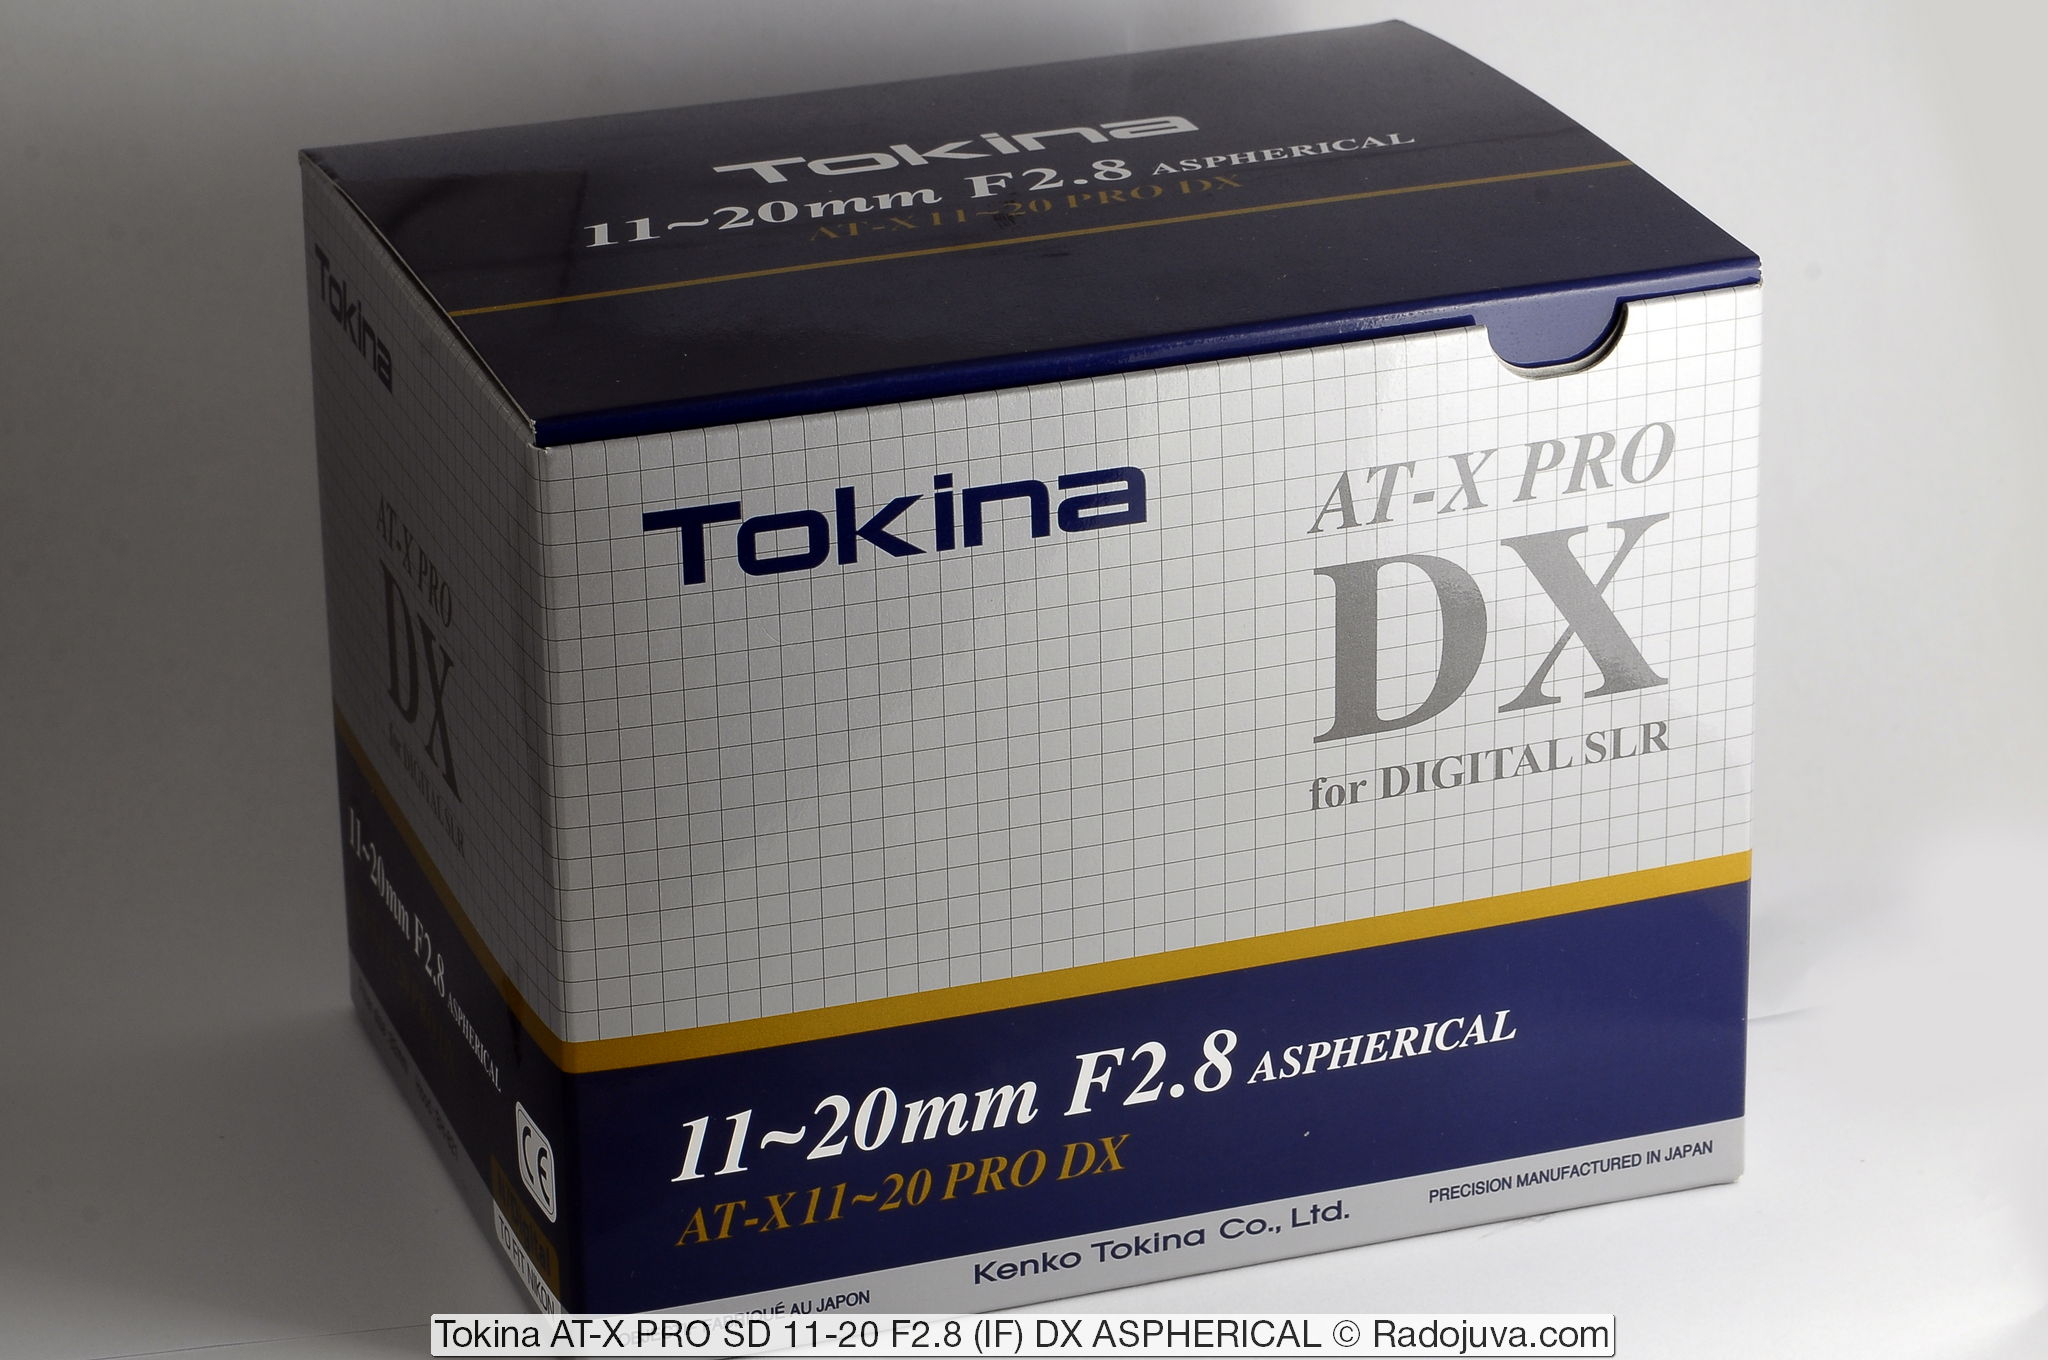 Tokina AT-X PRO SD 11-20 F2.8 (IF) DX ASFERISCH